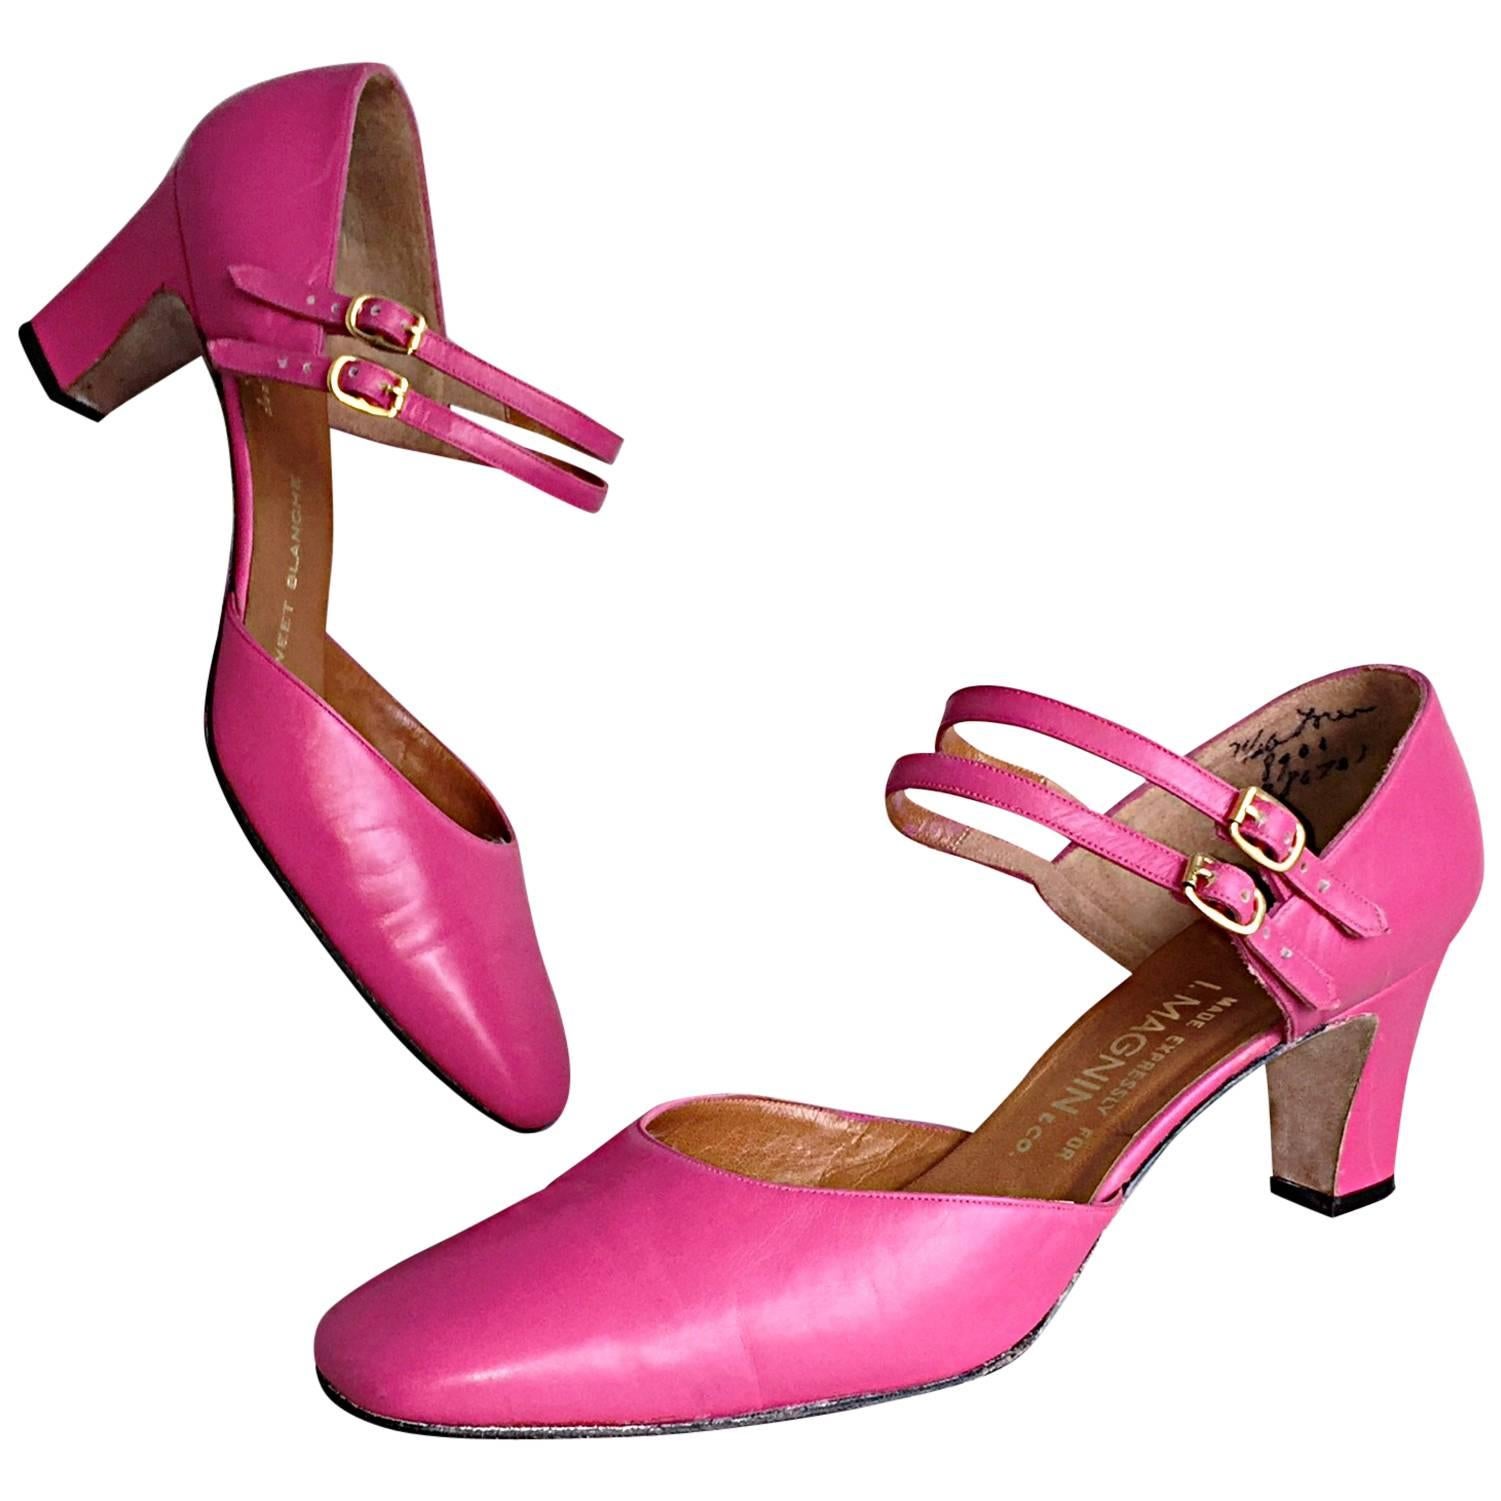 New 1960s David Evins for I. Magnin Hot Pink Size 7.5 Fuchsia Heels Pumps 